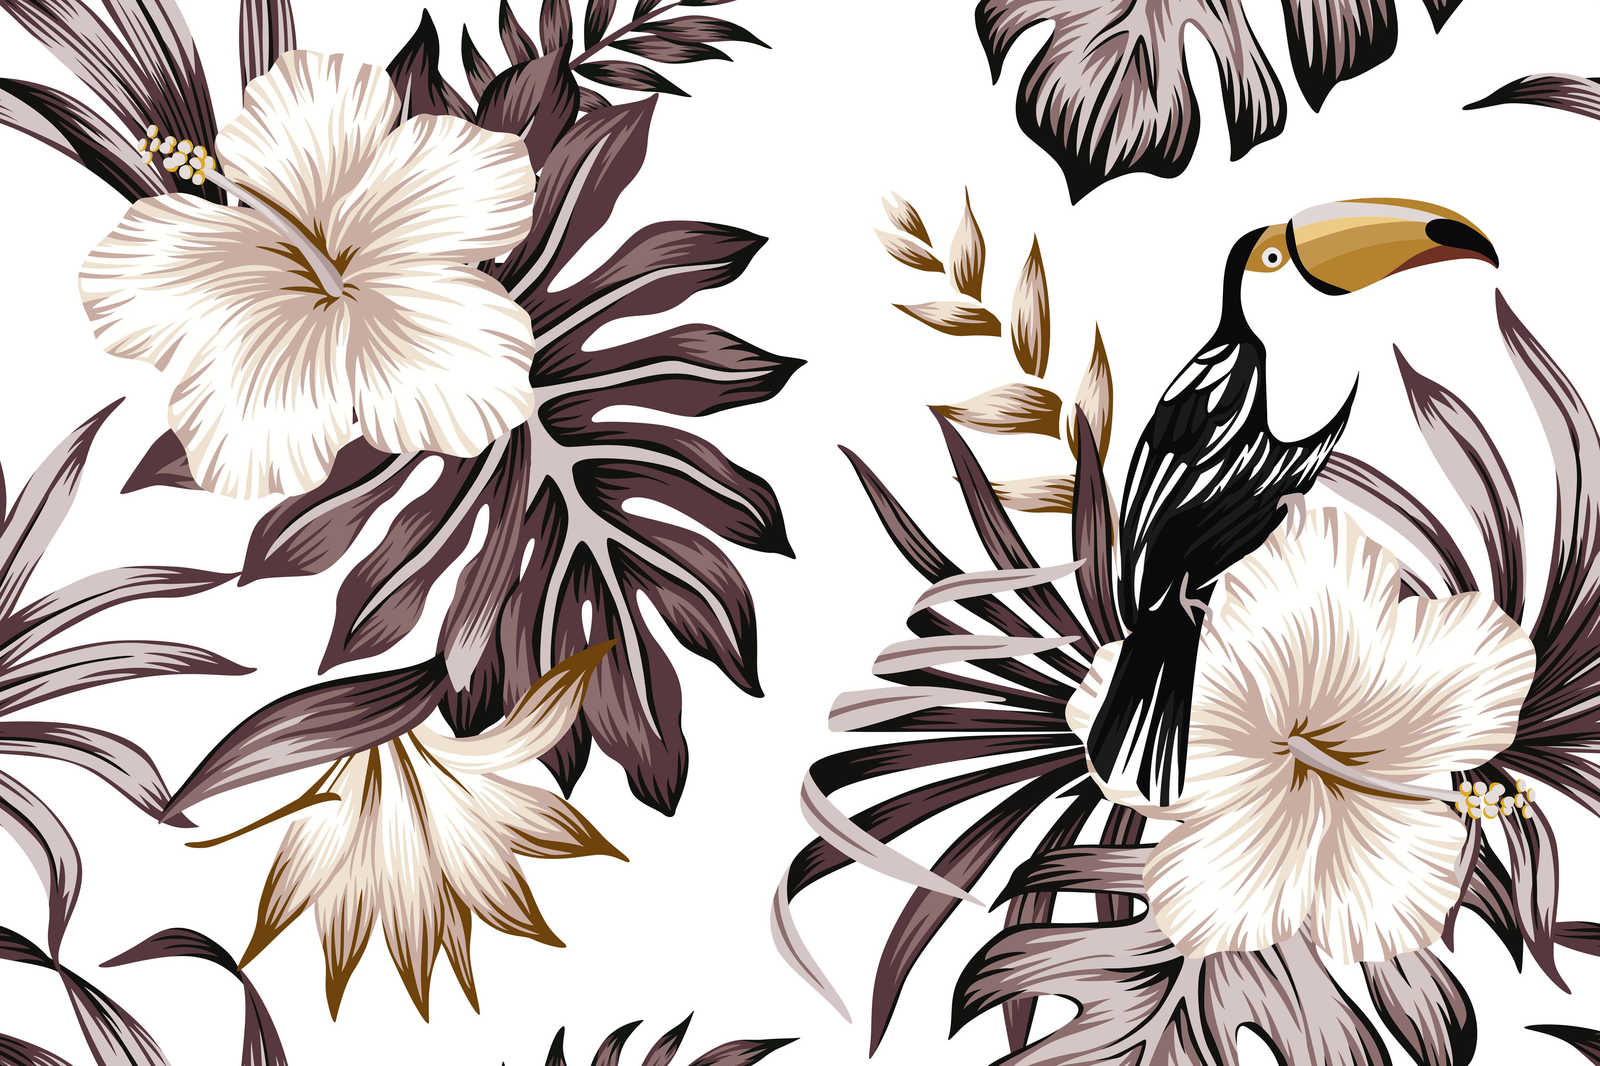             Canvas met jungleplanten en pelikaan | Grijs, Wit, Zwart - 0,90 m x 0,60 m
        